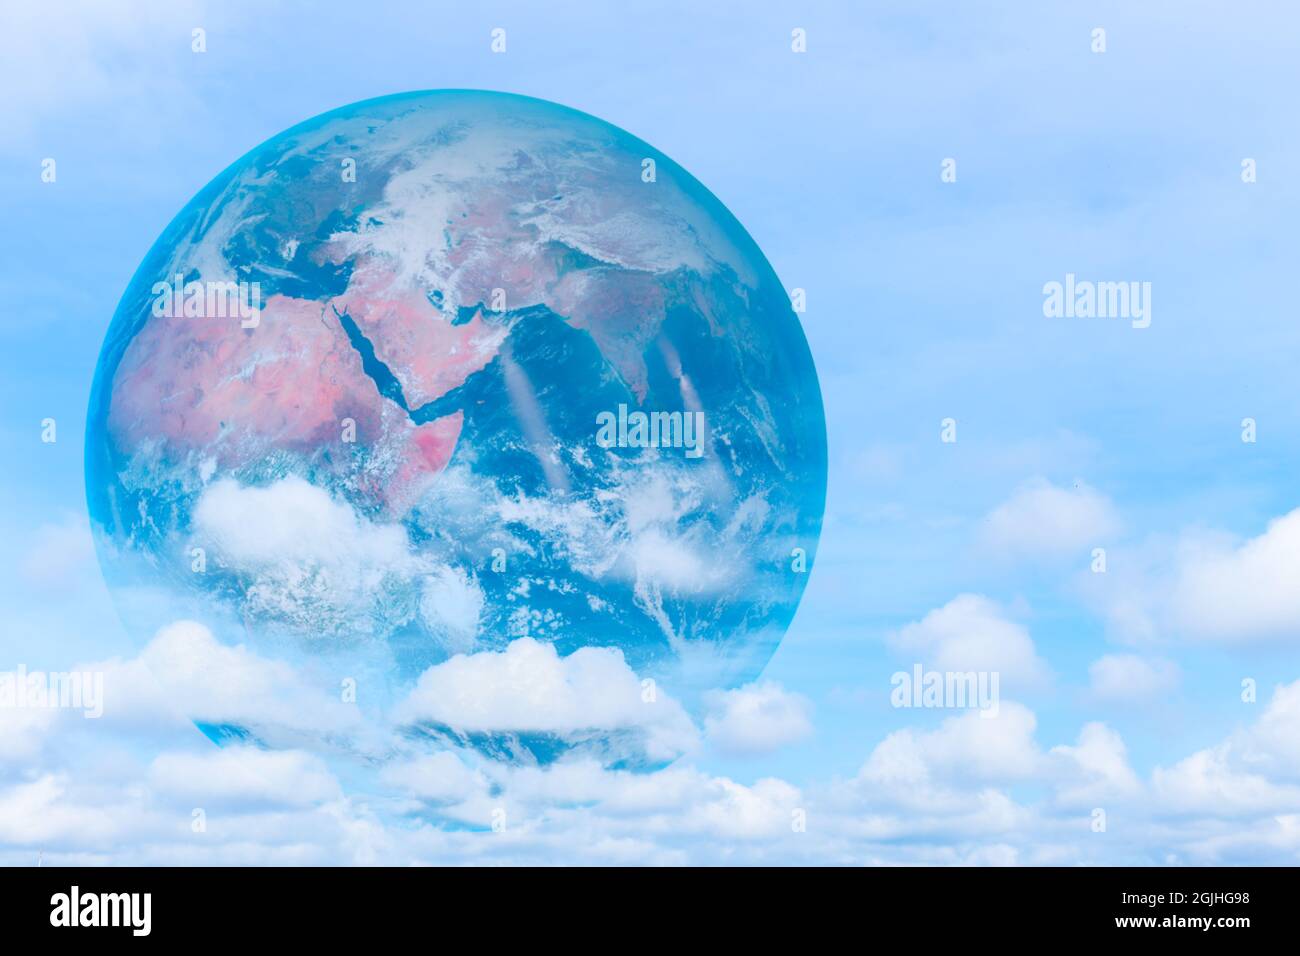 Clean Earth air frais rêve nouveau monde faible pollution sur le ciel bleu image concept. Éléments de cette image fournis par la NASA. Banque D'Images